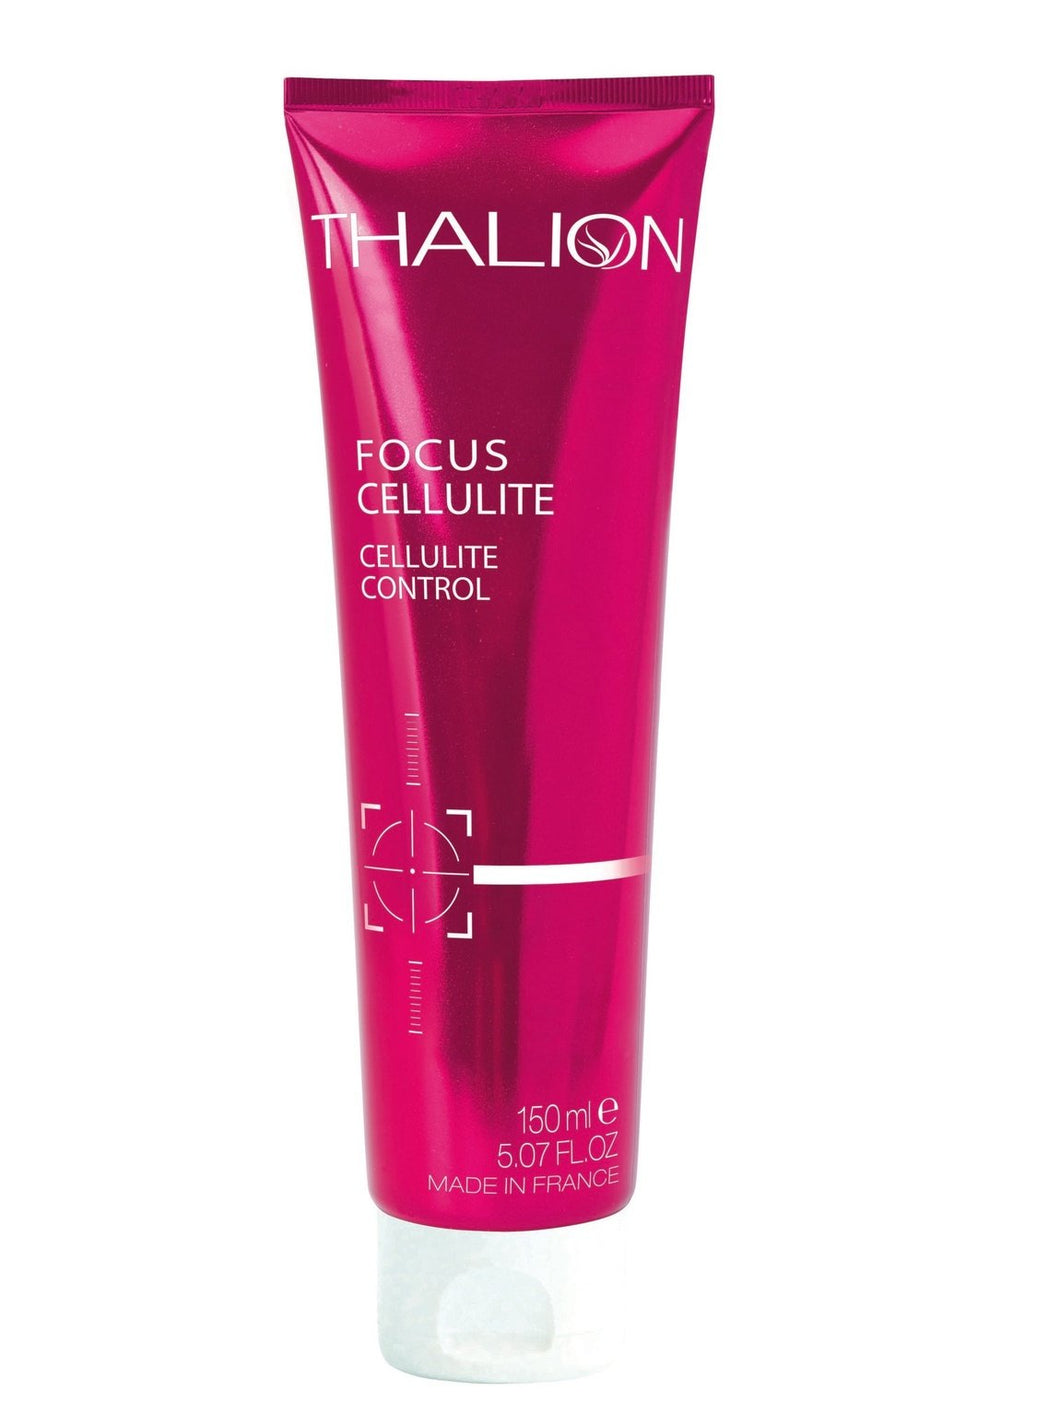 Focus Cellulite - Thalion